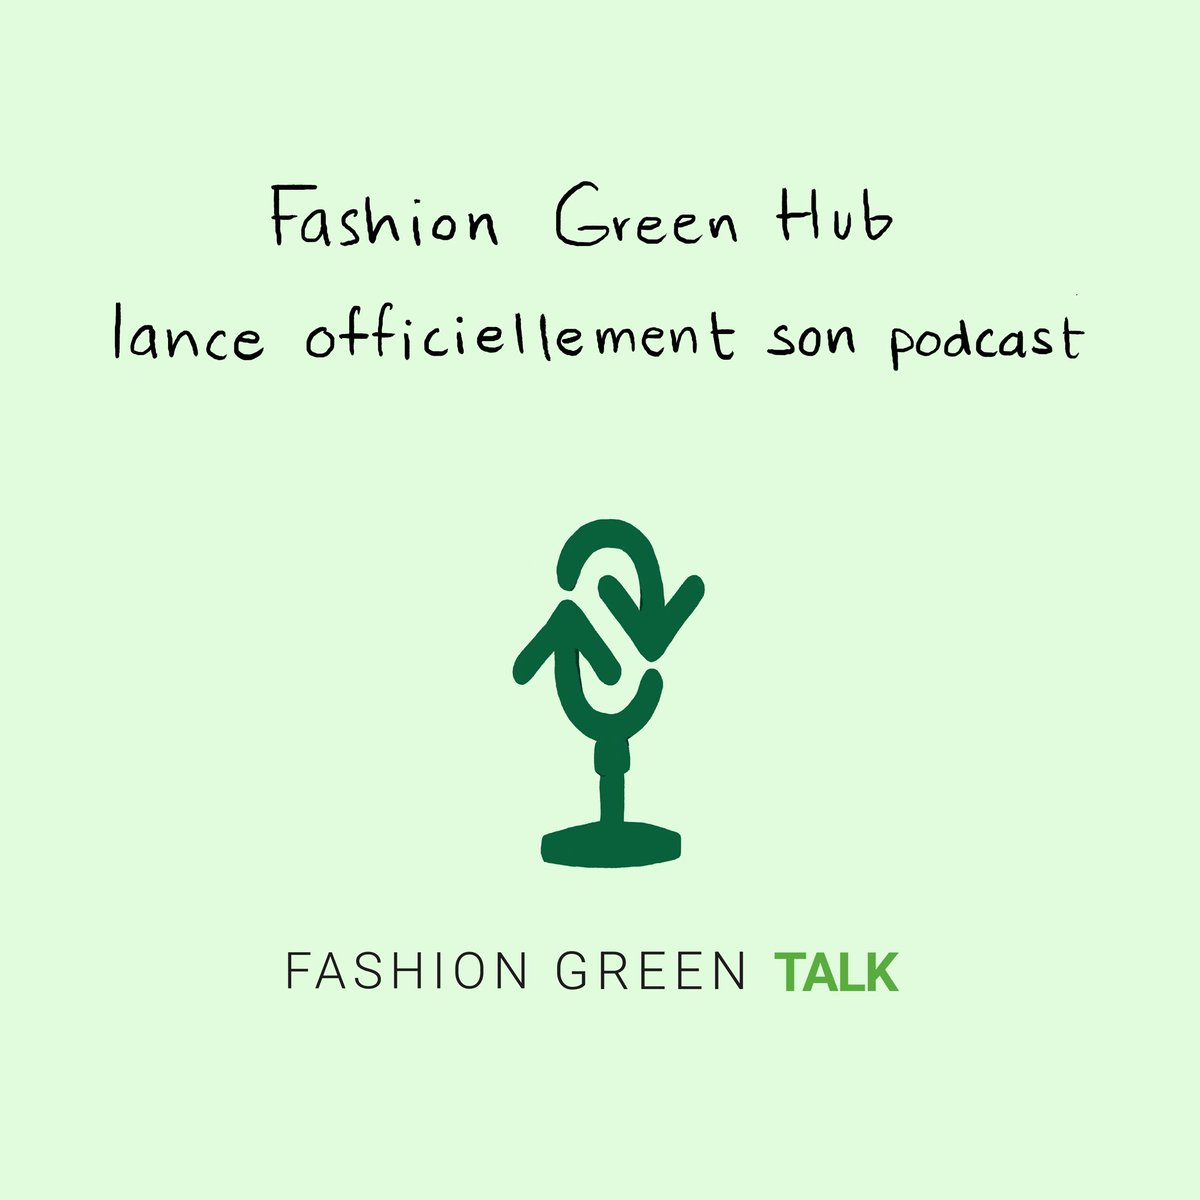 Fashion Green Hub lance son podcast 🎙️ Le podcast qui met en lumière les acteurs de la mode durable ♻️ Disponible sur toutes les plateformes audio 🔉 À suivre 🌱 #fashiongreenhub #podcast #modecirculaire #sustainability #sustainablefashion #mode